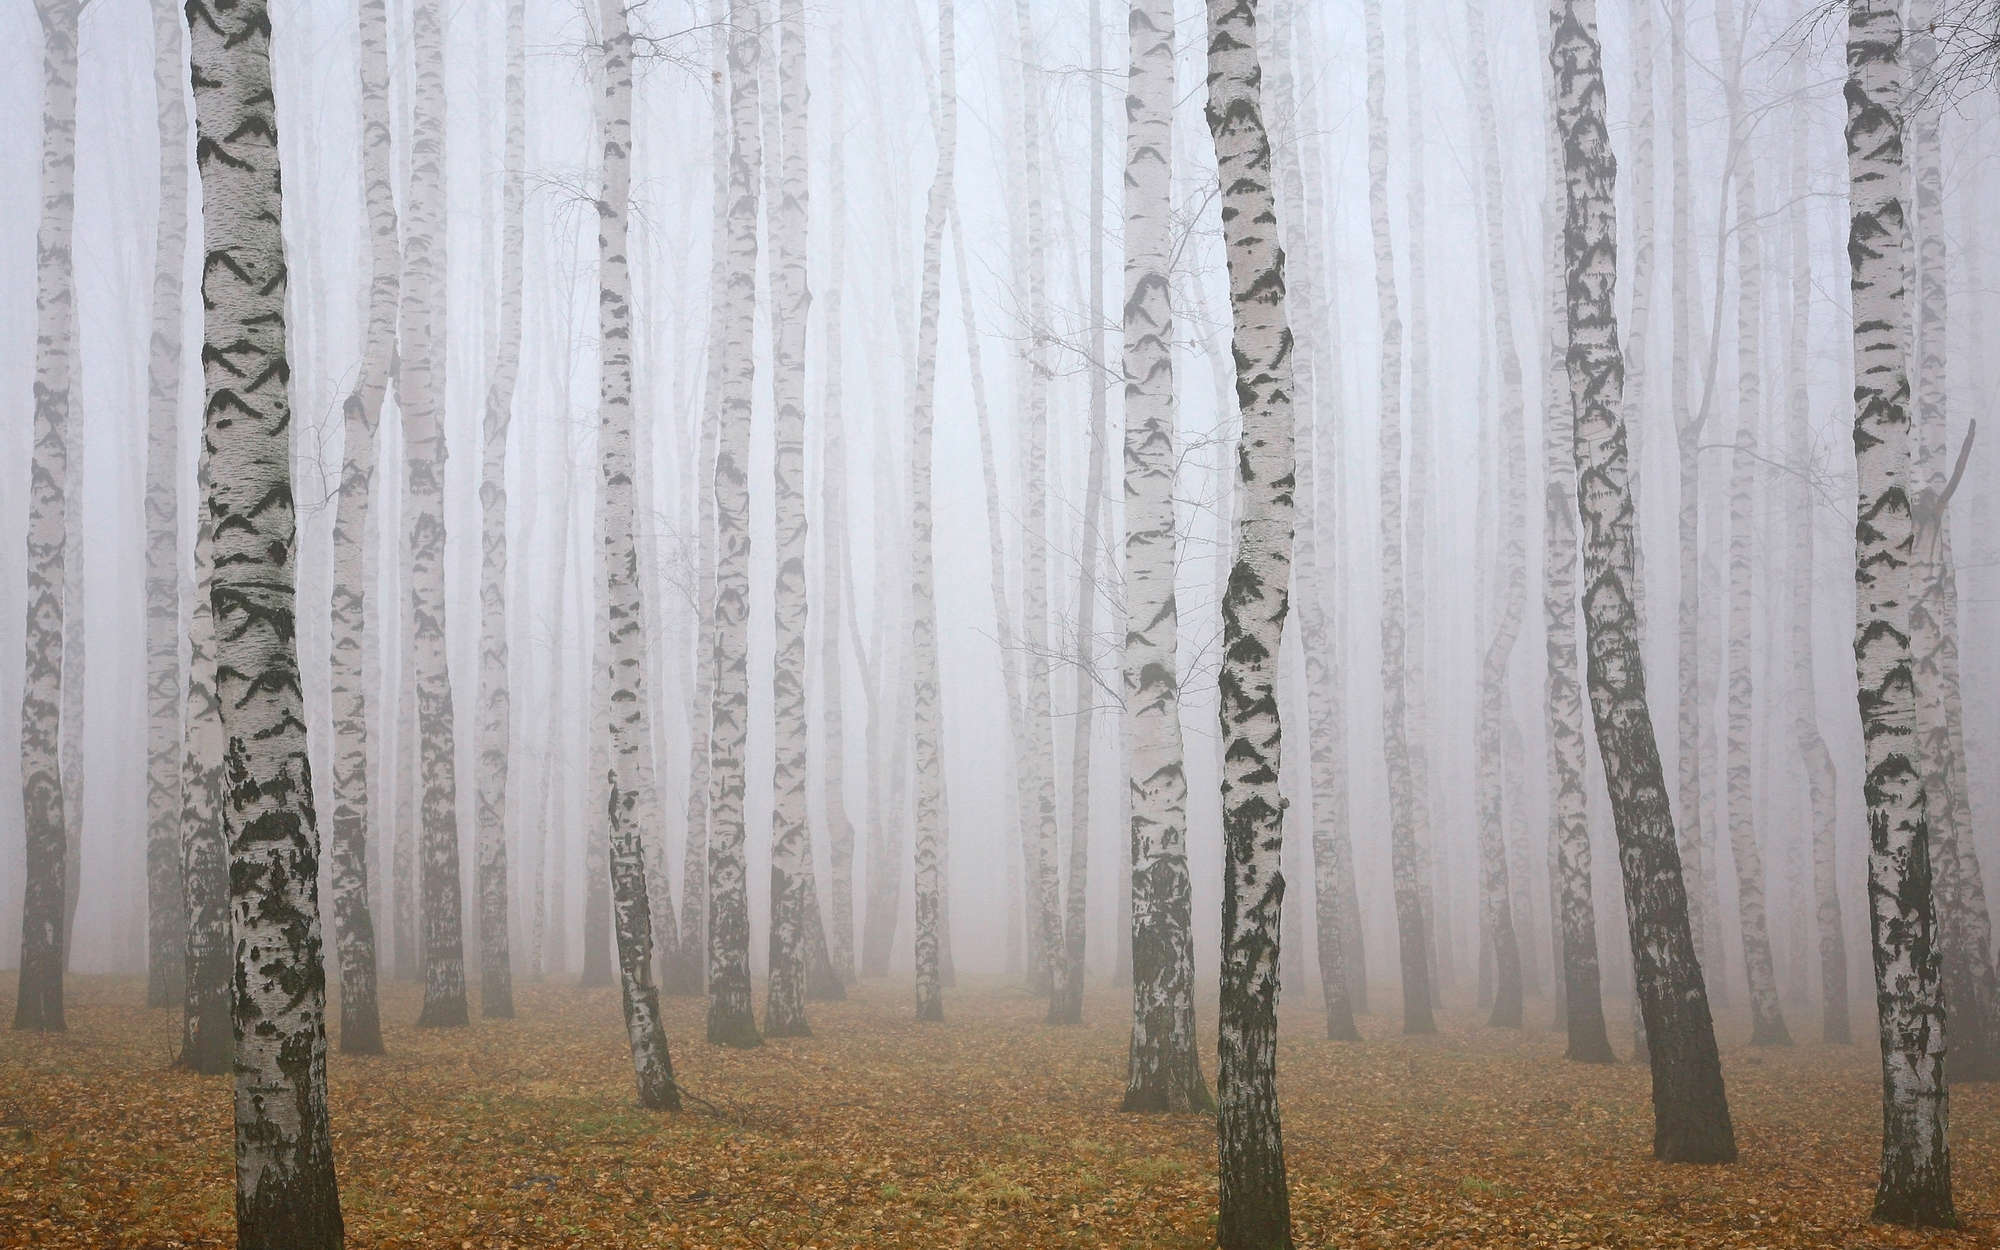             Berkenbos in de mist Onderlaag behang - Parelmoer glad vlies
        